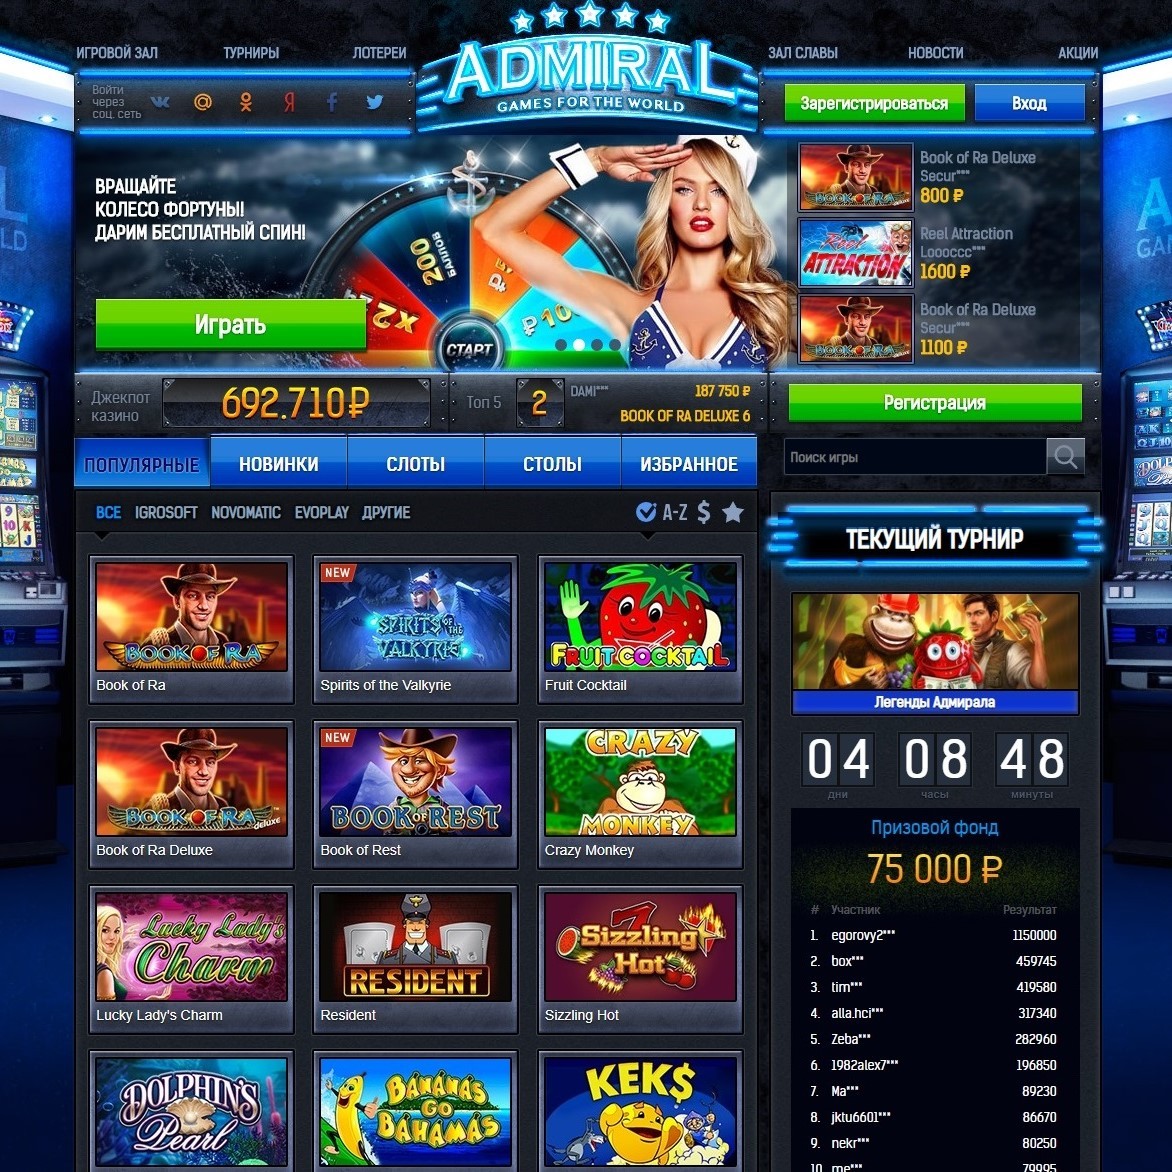 Slots casino offline